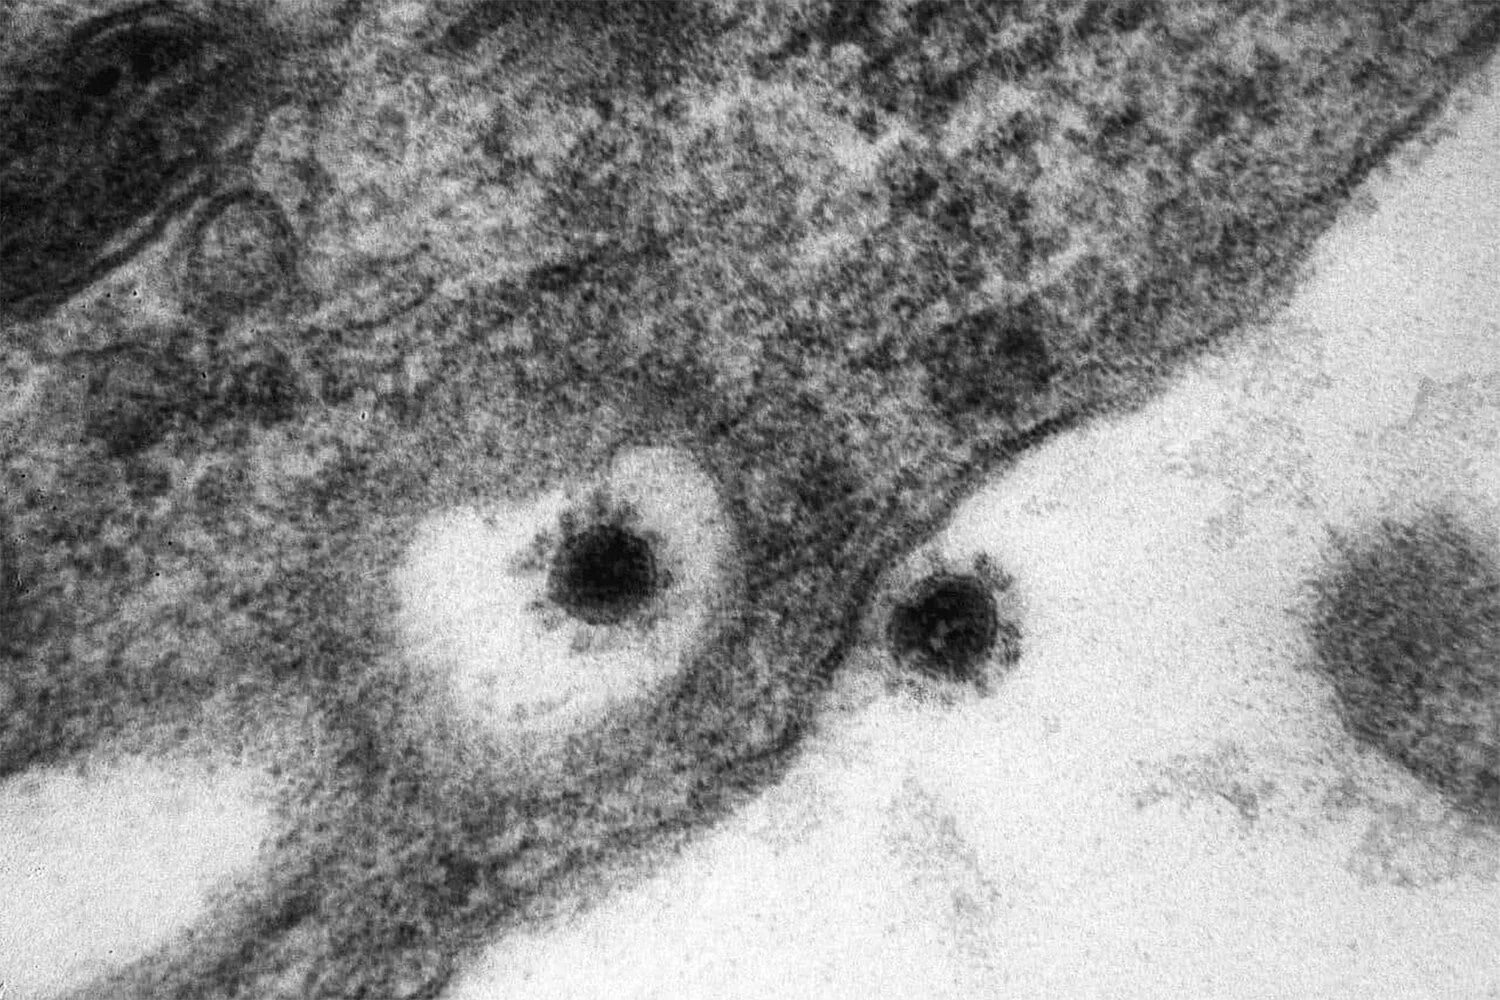 SARS-cov-2 Дельта штамм. Вирус Covid 19 под микроскопом. Вирус SARS-cov-2 под микроскопом. Штаммы коронавируса под микроскопом. Коронавирус какие штаммы